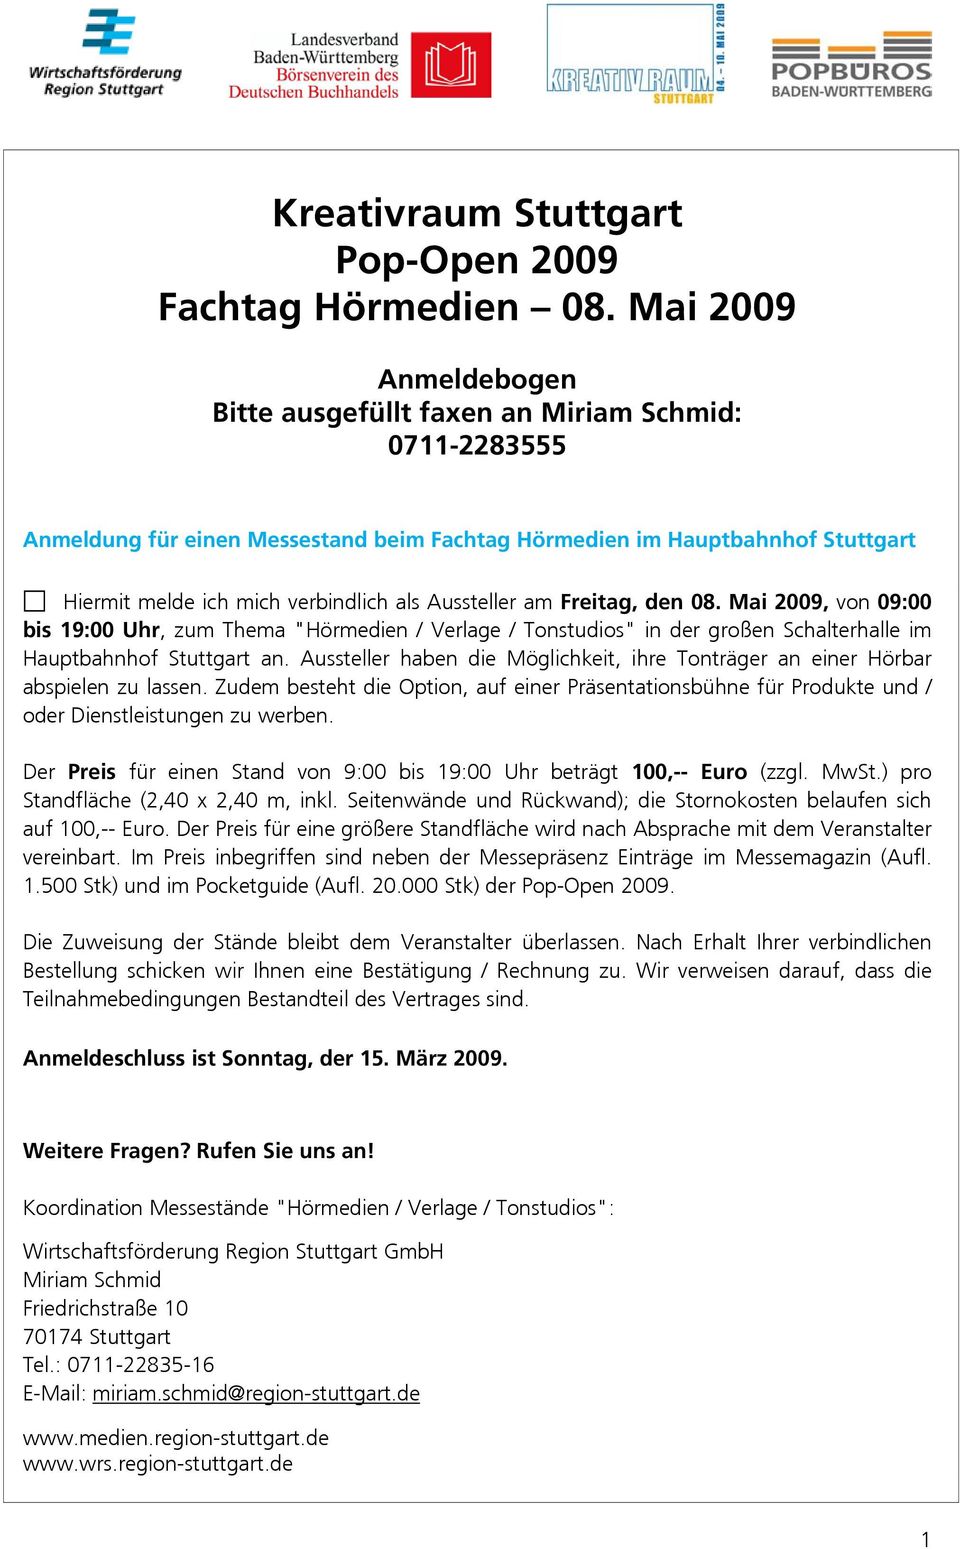 Aussteller am Freitag, den 08. Mai 2009, von 09:00 bis 19:00 Uhr, zum Thema "Hörmedien / Verlage / Tonstudios" in der großen Schalterhalle im Hauptbahnhof Stuttgart an.